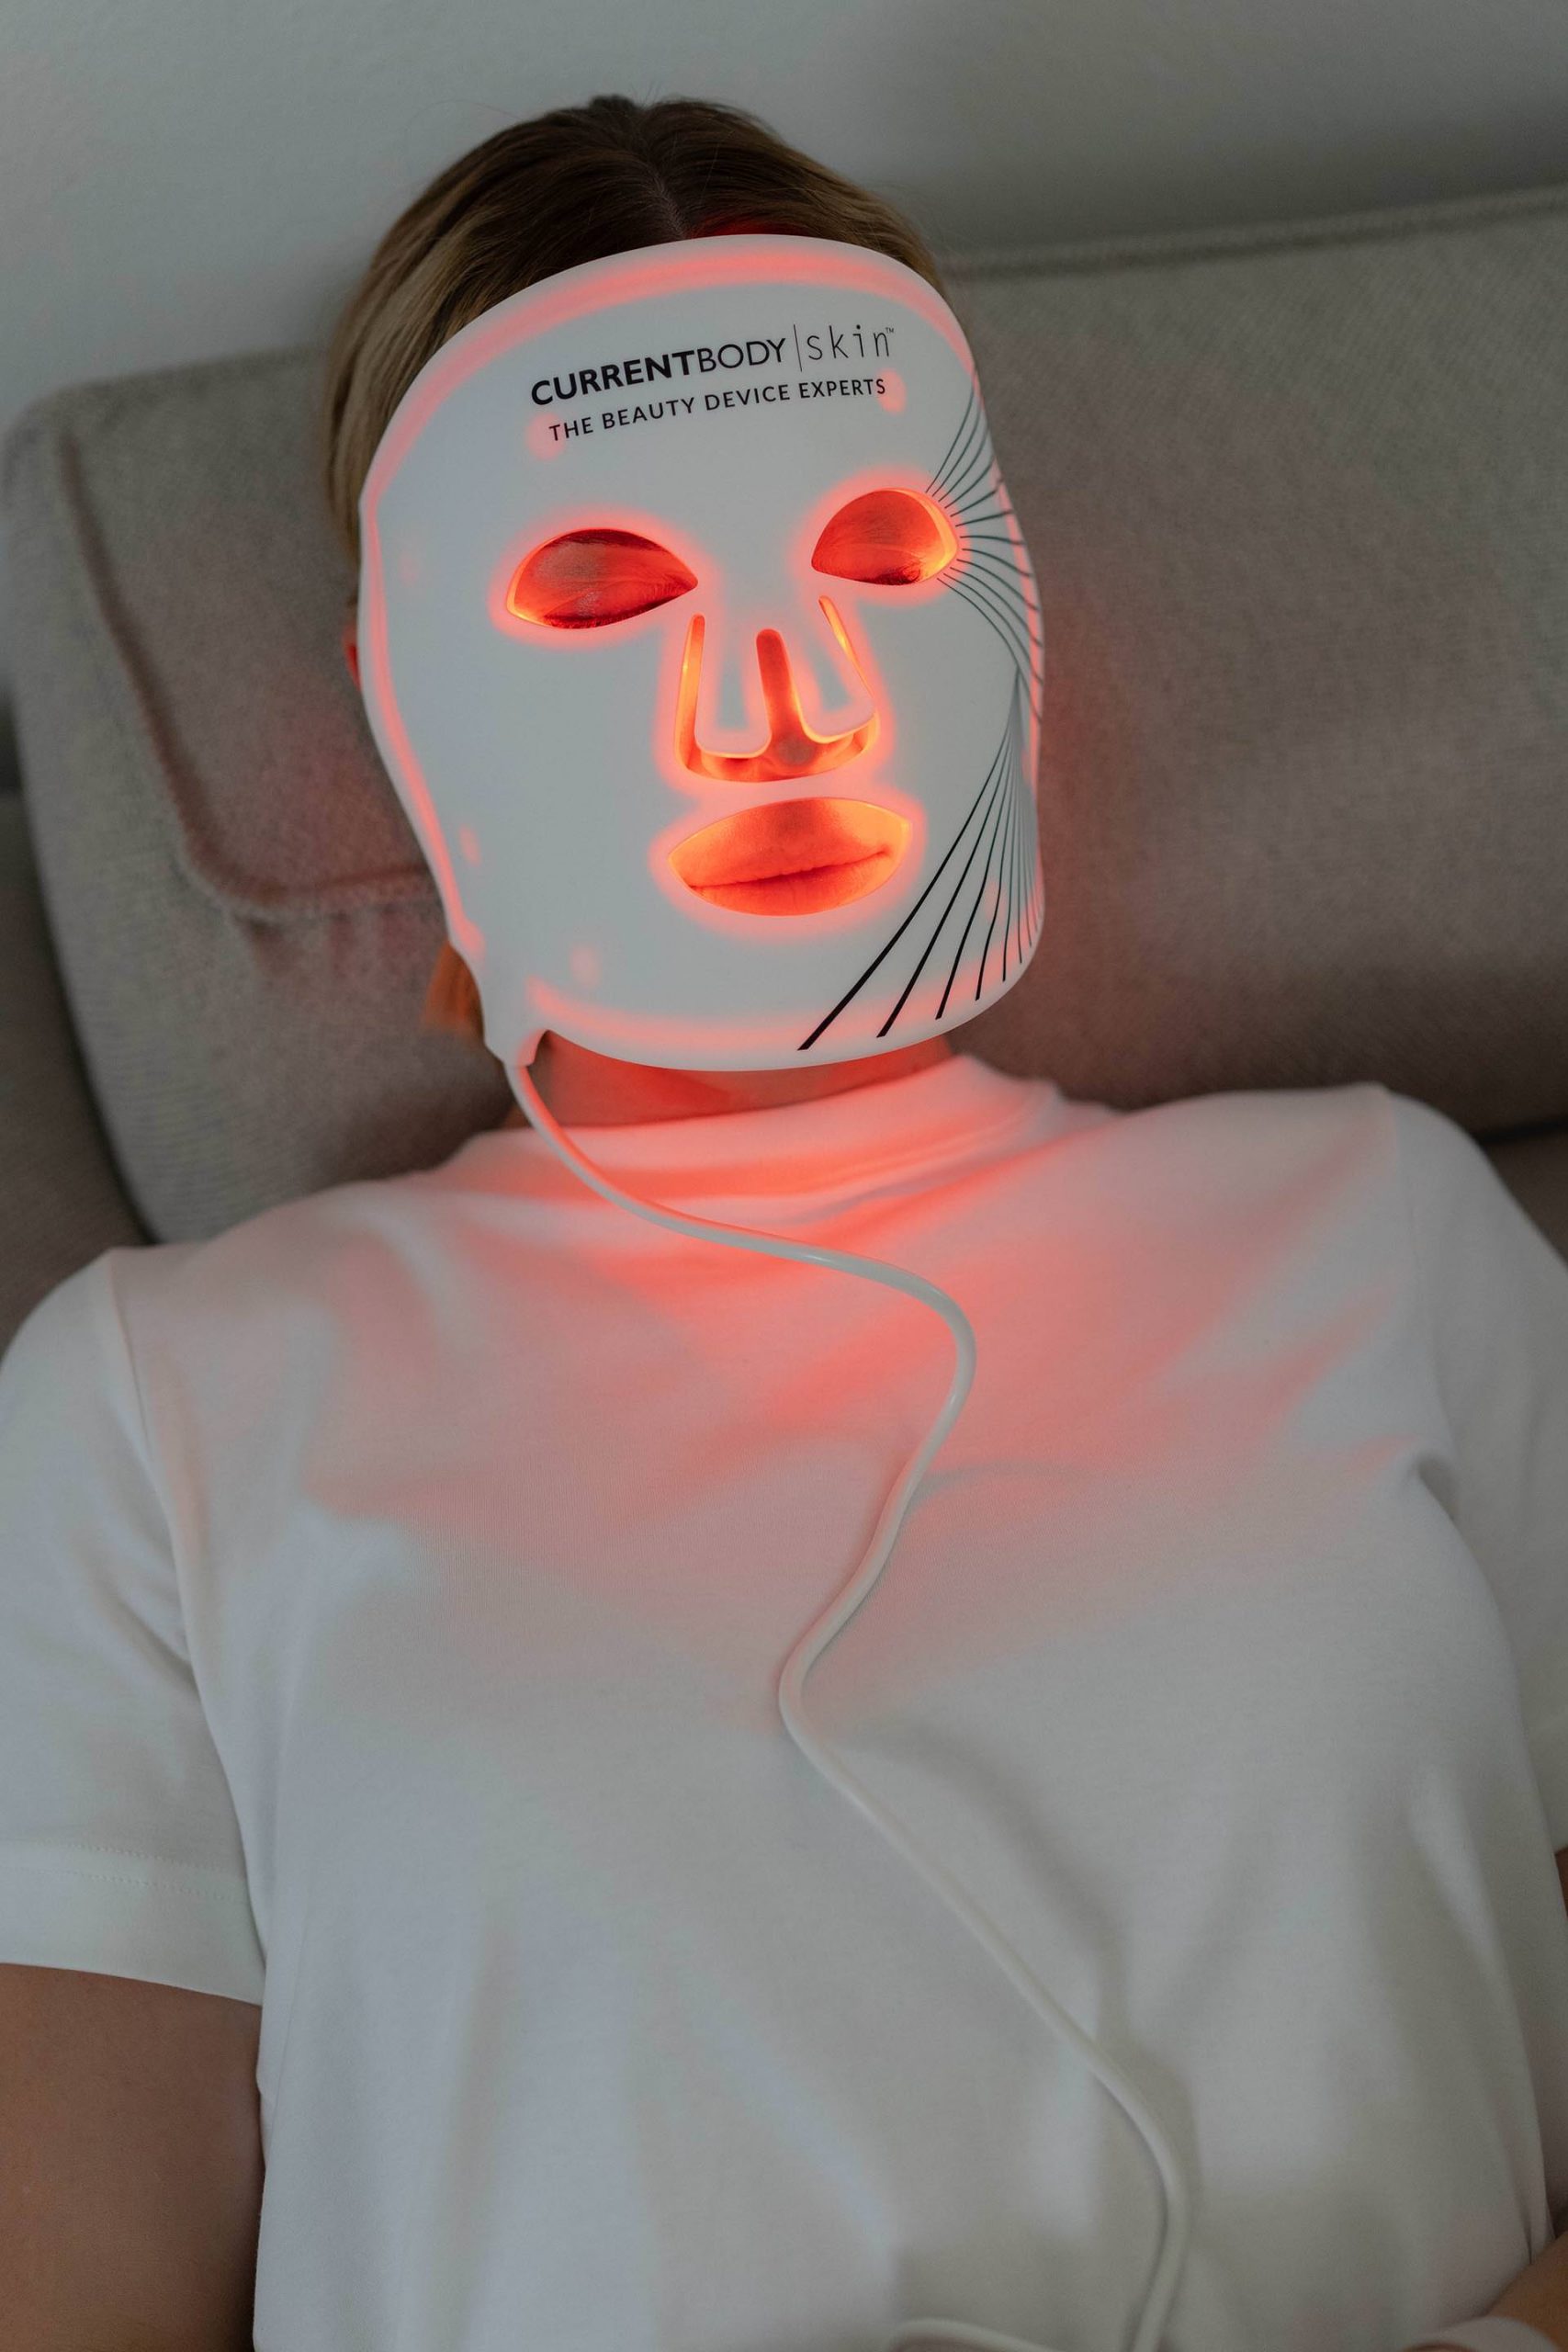 Anzeige. Lass dich von der CurrentBody Skin LED Lichttherapie Maske überzeugen. Sie ist ein Schlüsselelement meiner Hautpflegeroutine und hat meine Hautgesundheit deutlich verbessert.